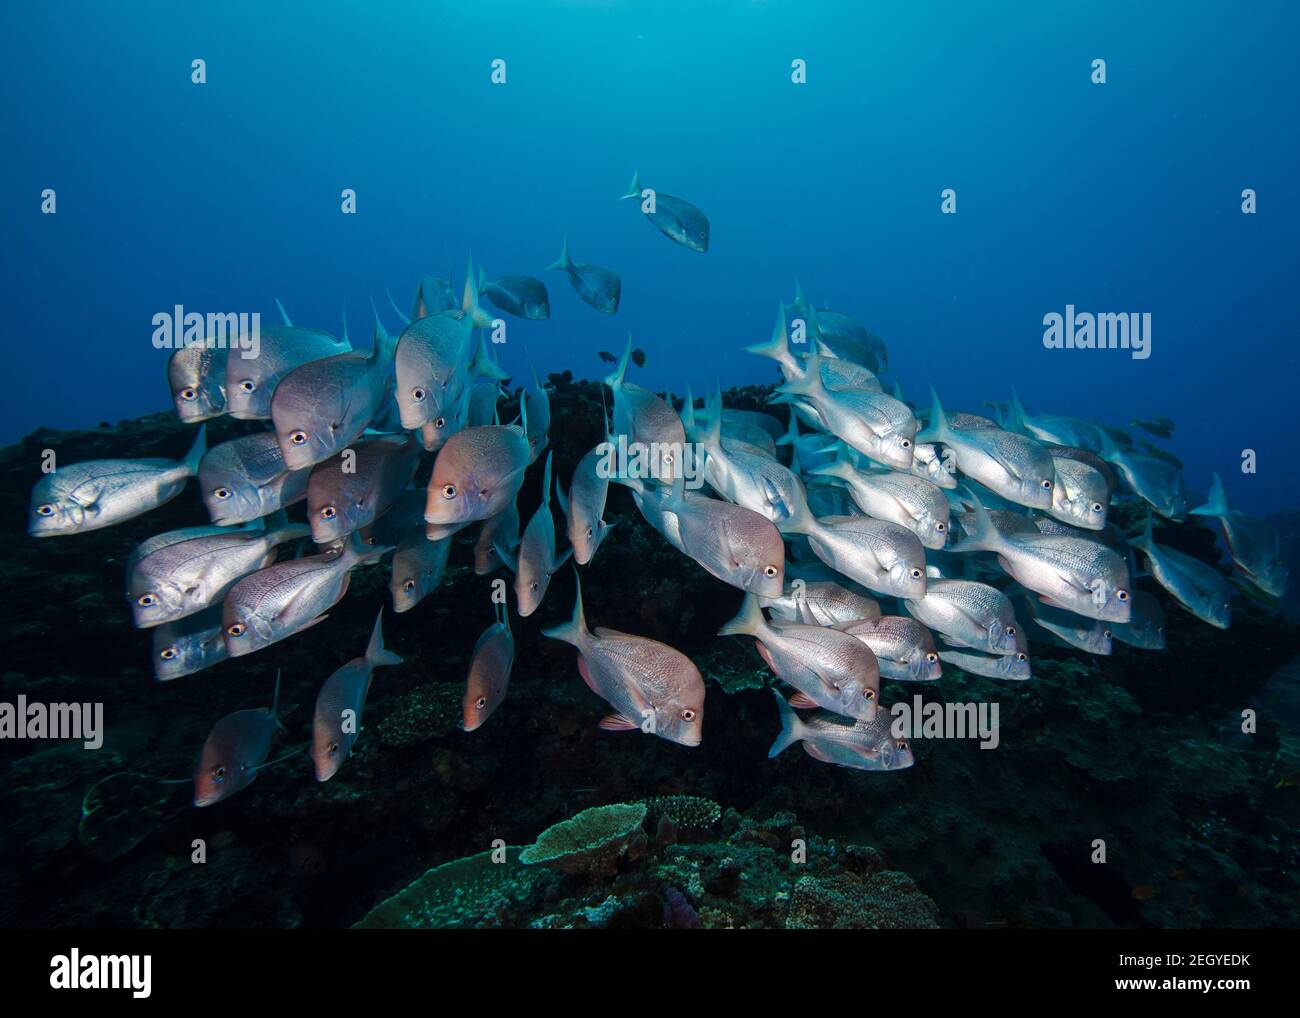 Ruilhandel motor Bladeren verzamelen Slinger fish hi-res stock photography and images - Alamy